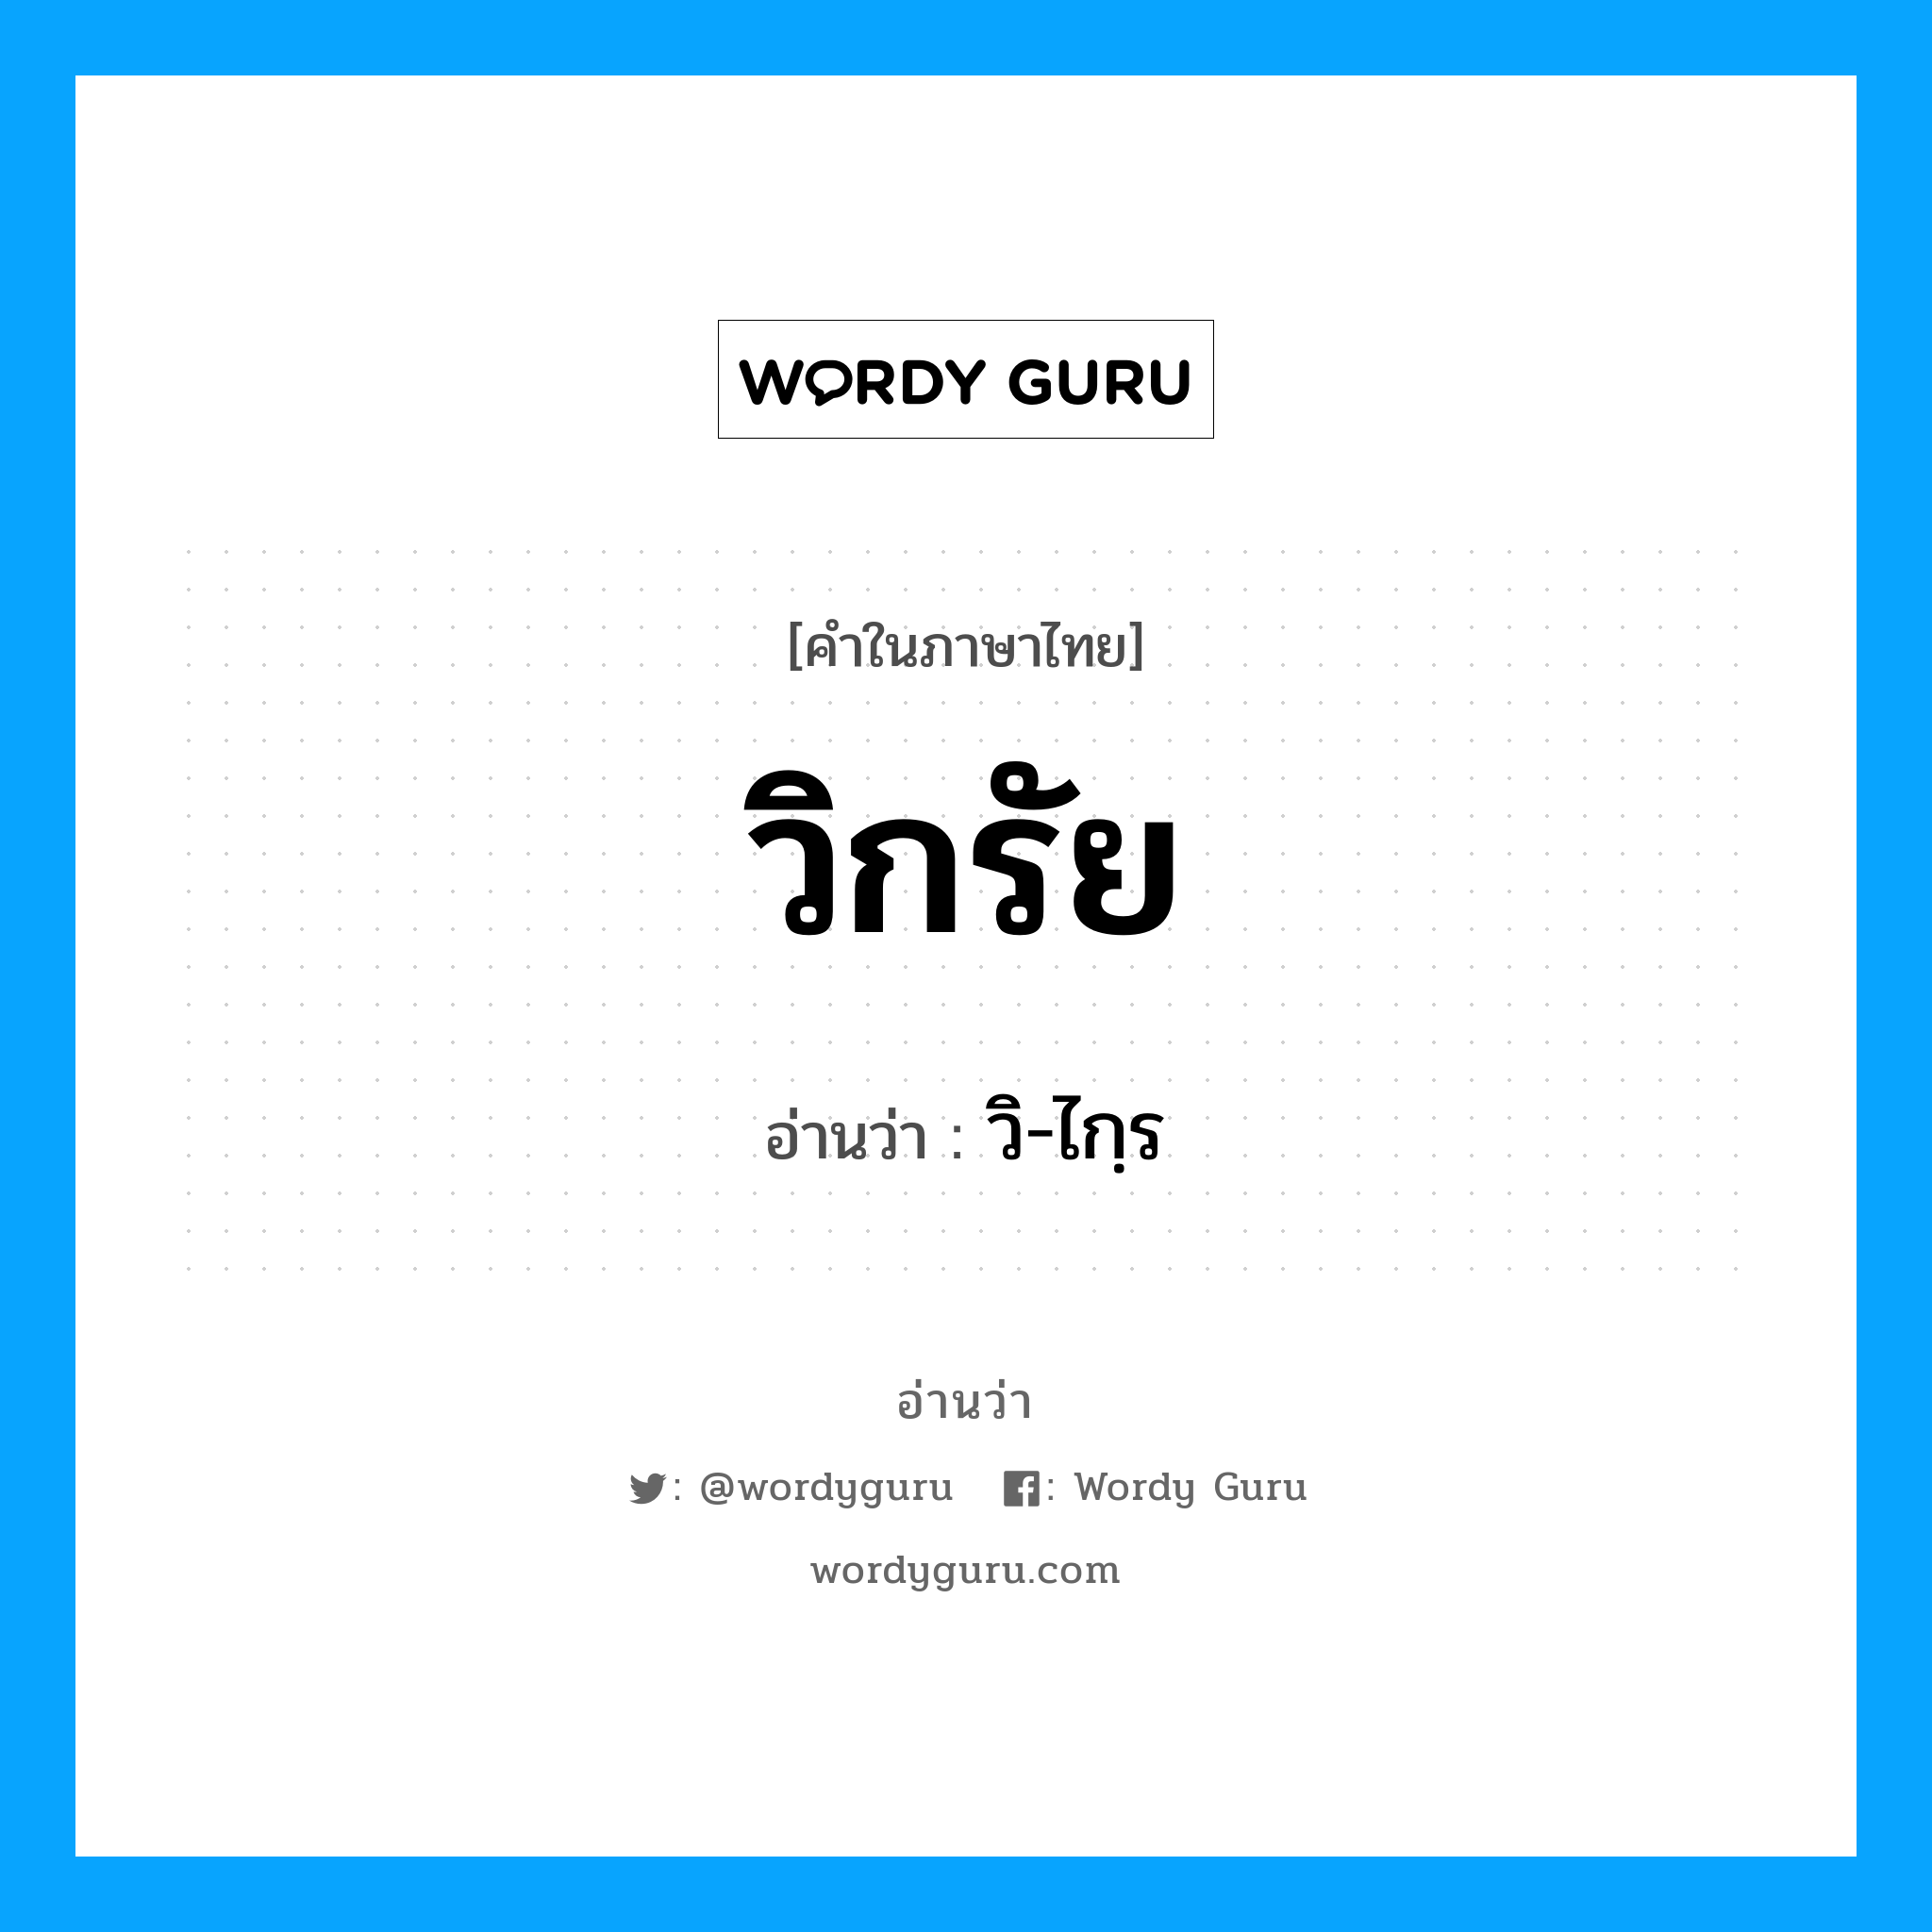 วิ-ไกฺร เป็นคำอ่านของคำไหน?, คำในภาษาไทย วิ-ไกฺร อ่านว่า วิกรัย